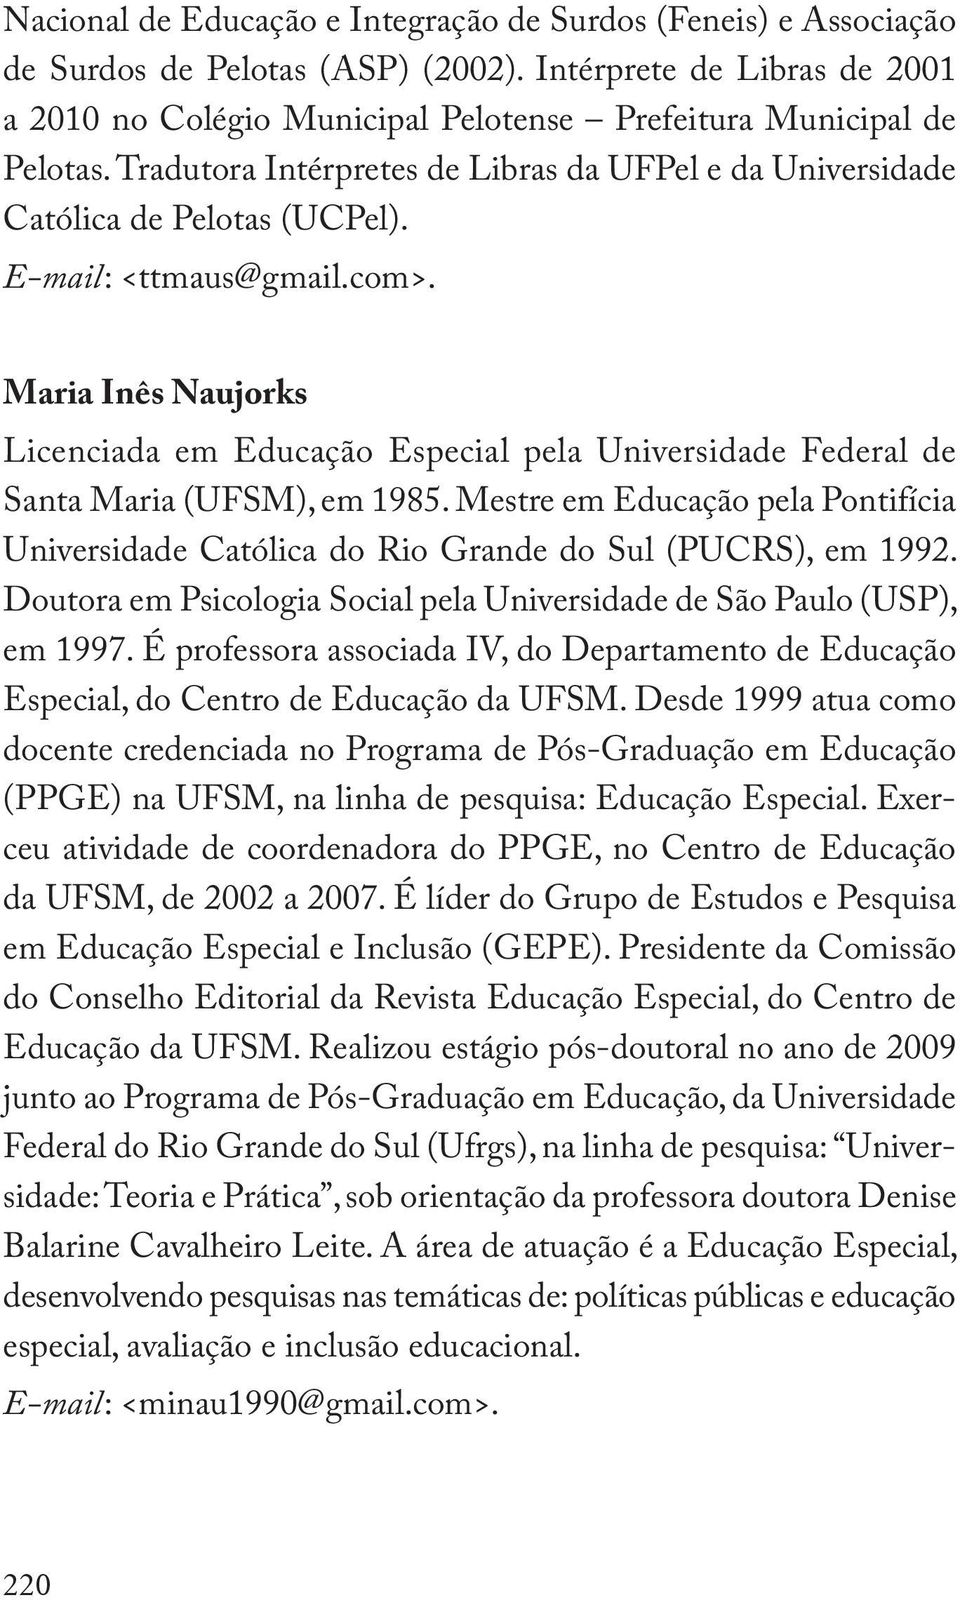 Maria Inês Naujorks Licenciada em Educação Especial pela Universidade Federal de Santa Maria (UFSM), em 1985.